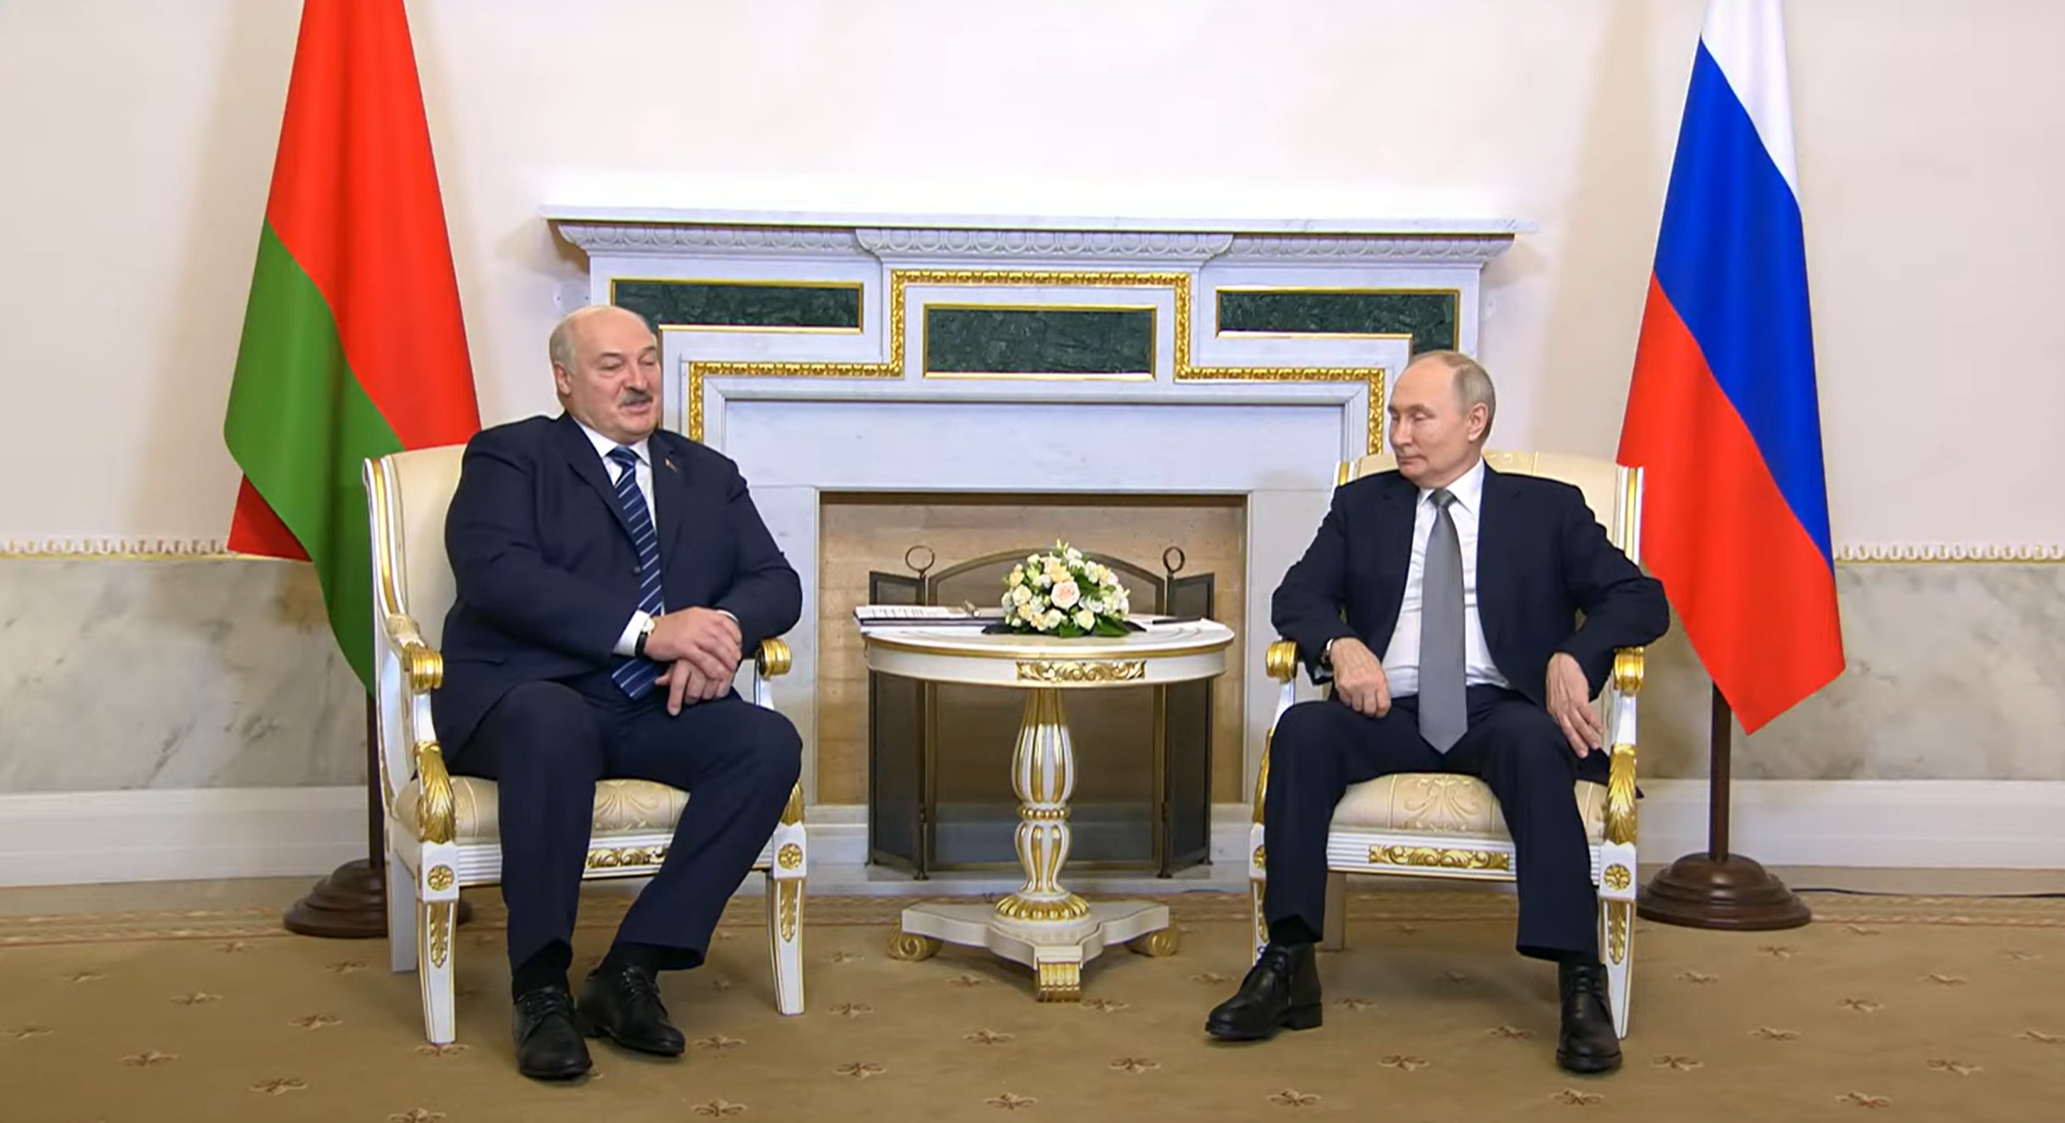 У Запада не получится разъединить Россию и Белоруссию